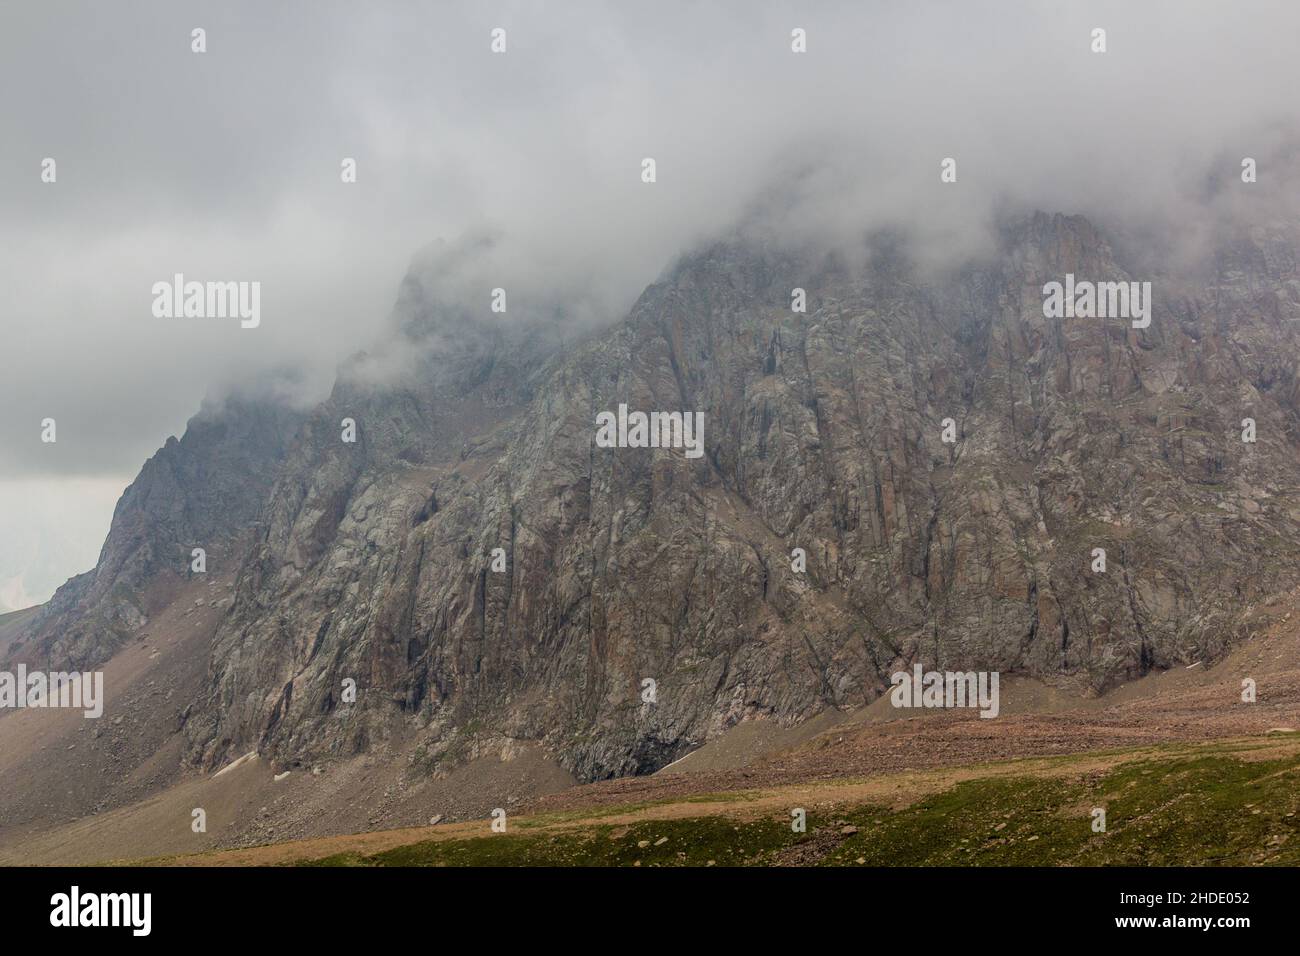 Rocks in Trans-Ili Alatau Zailiyskiy Alatau mountain range near Almaty, Kazakhstan Stock Photo